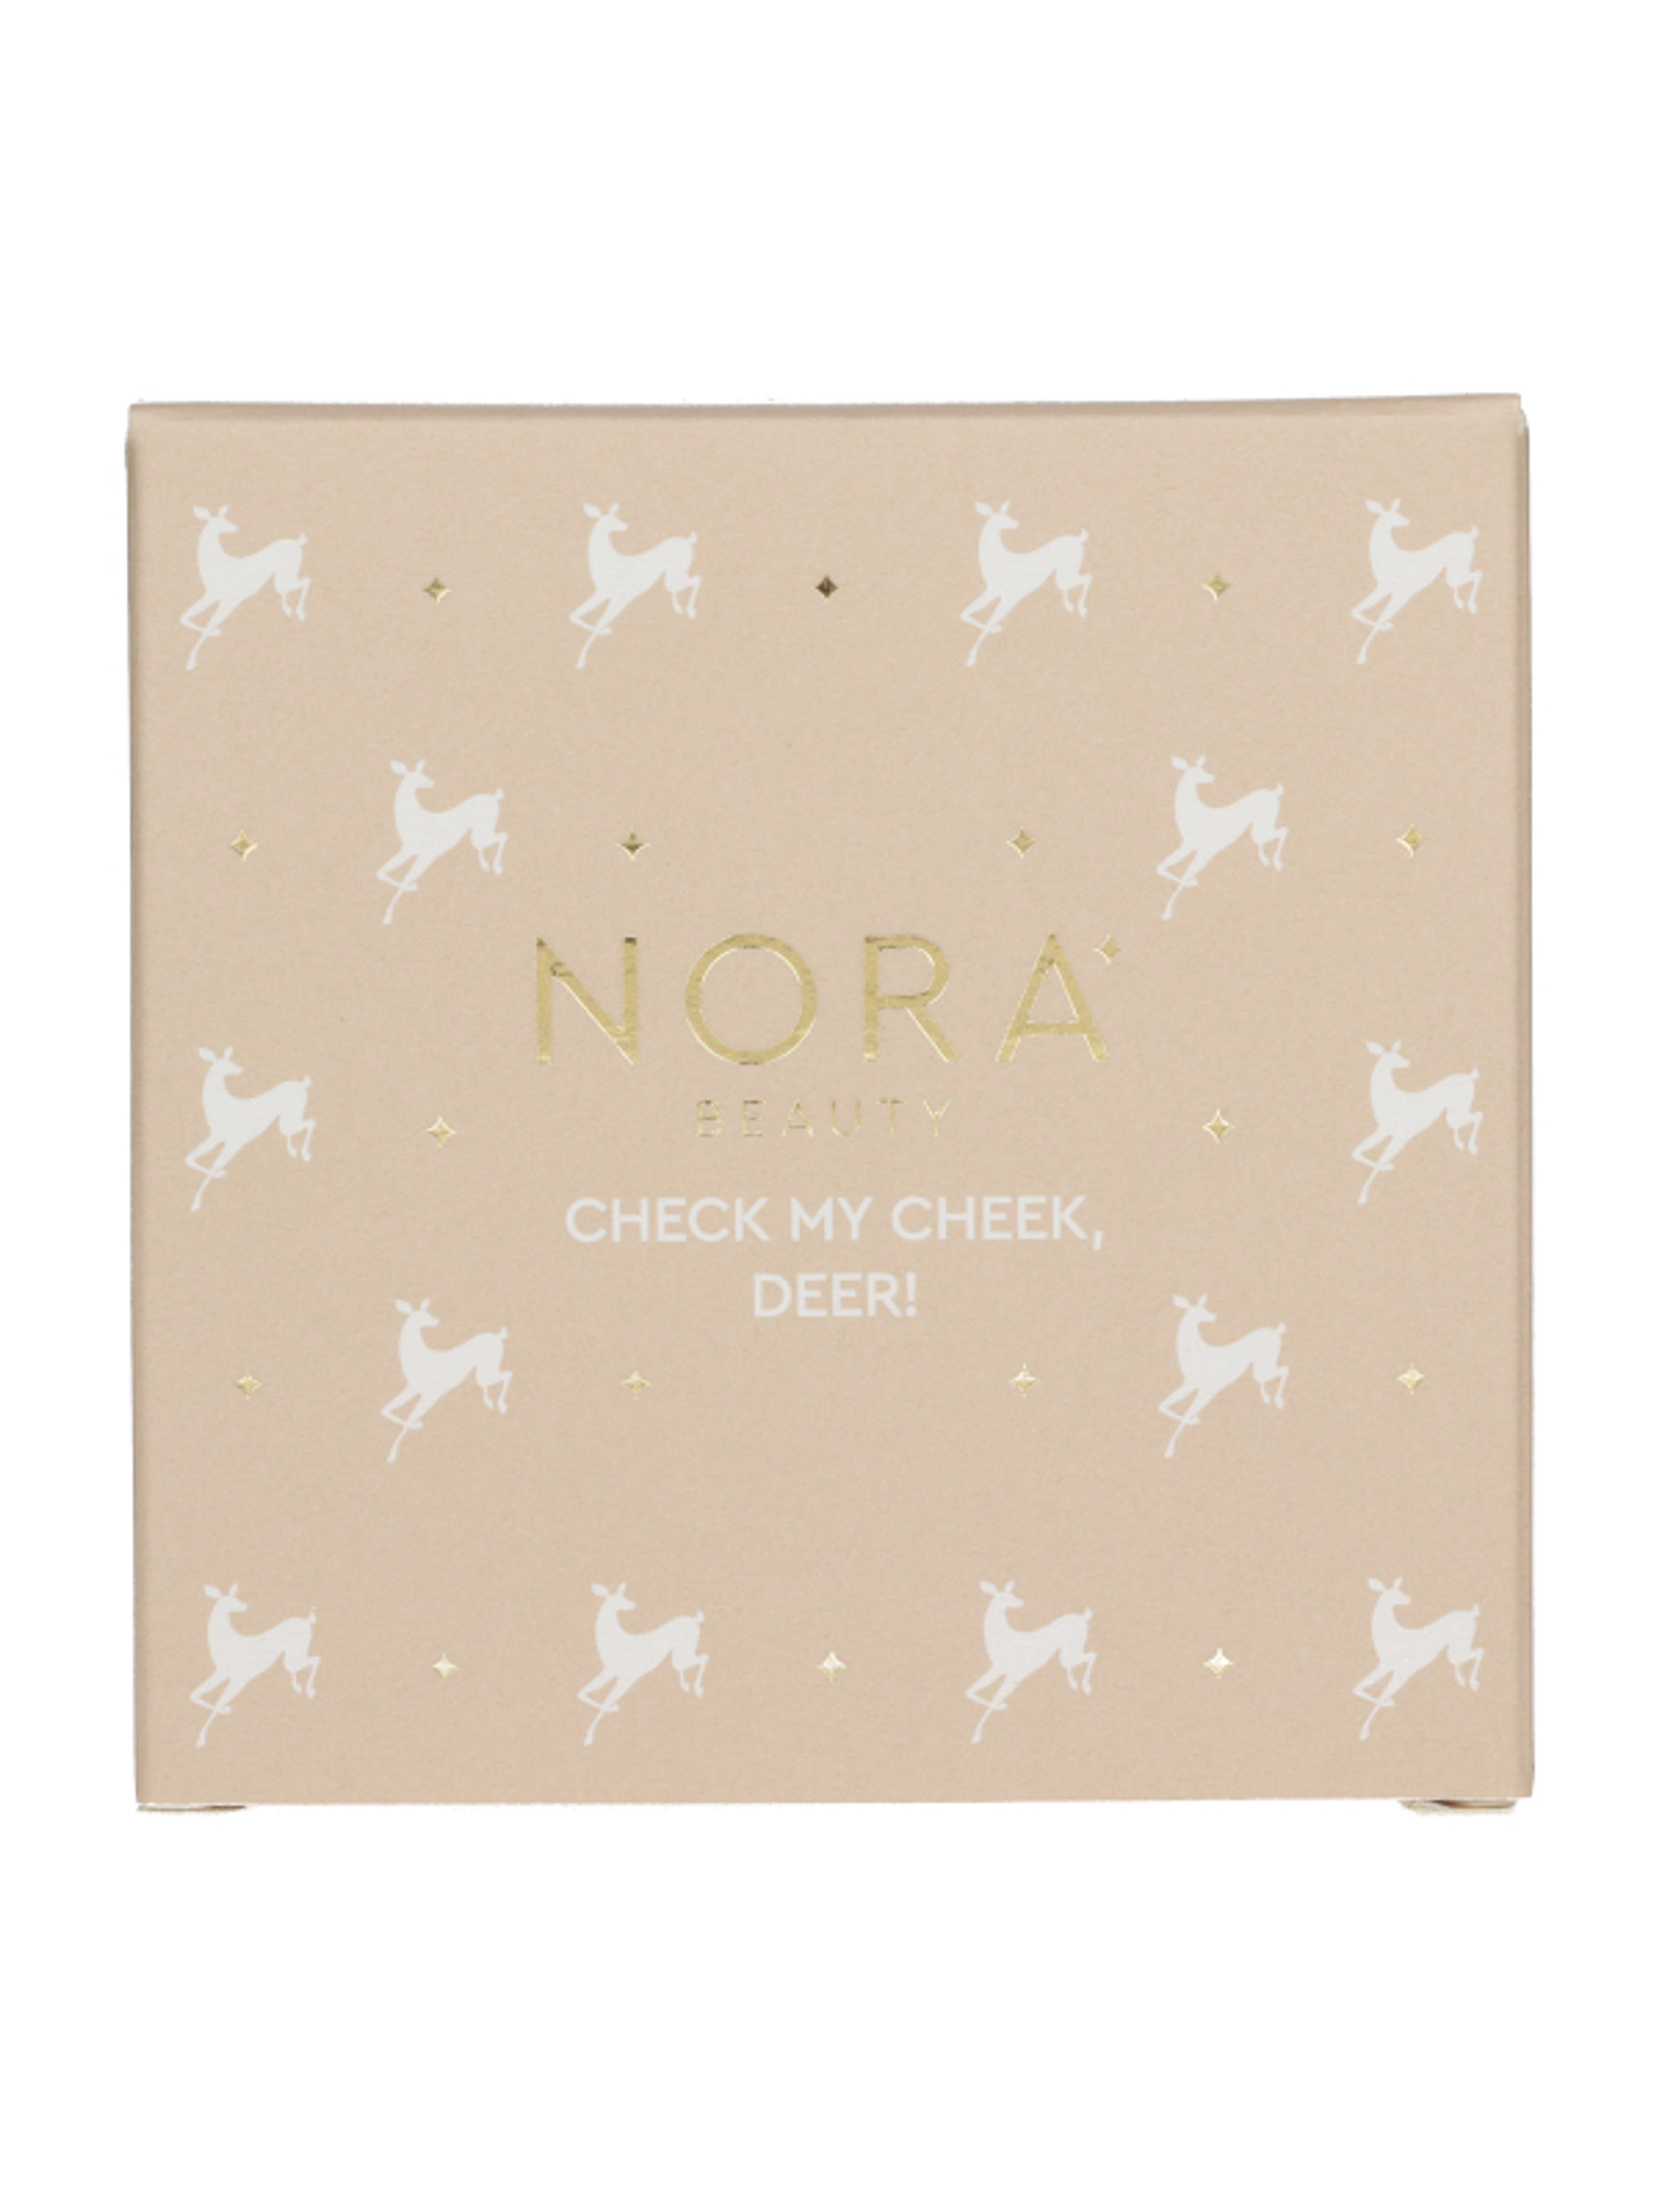 Nora Beauty pirosító, bronzosító és highlighter/01 Soft - 1 db